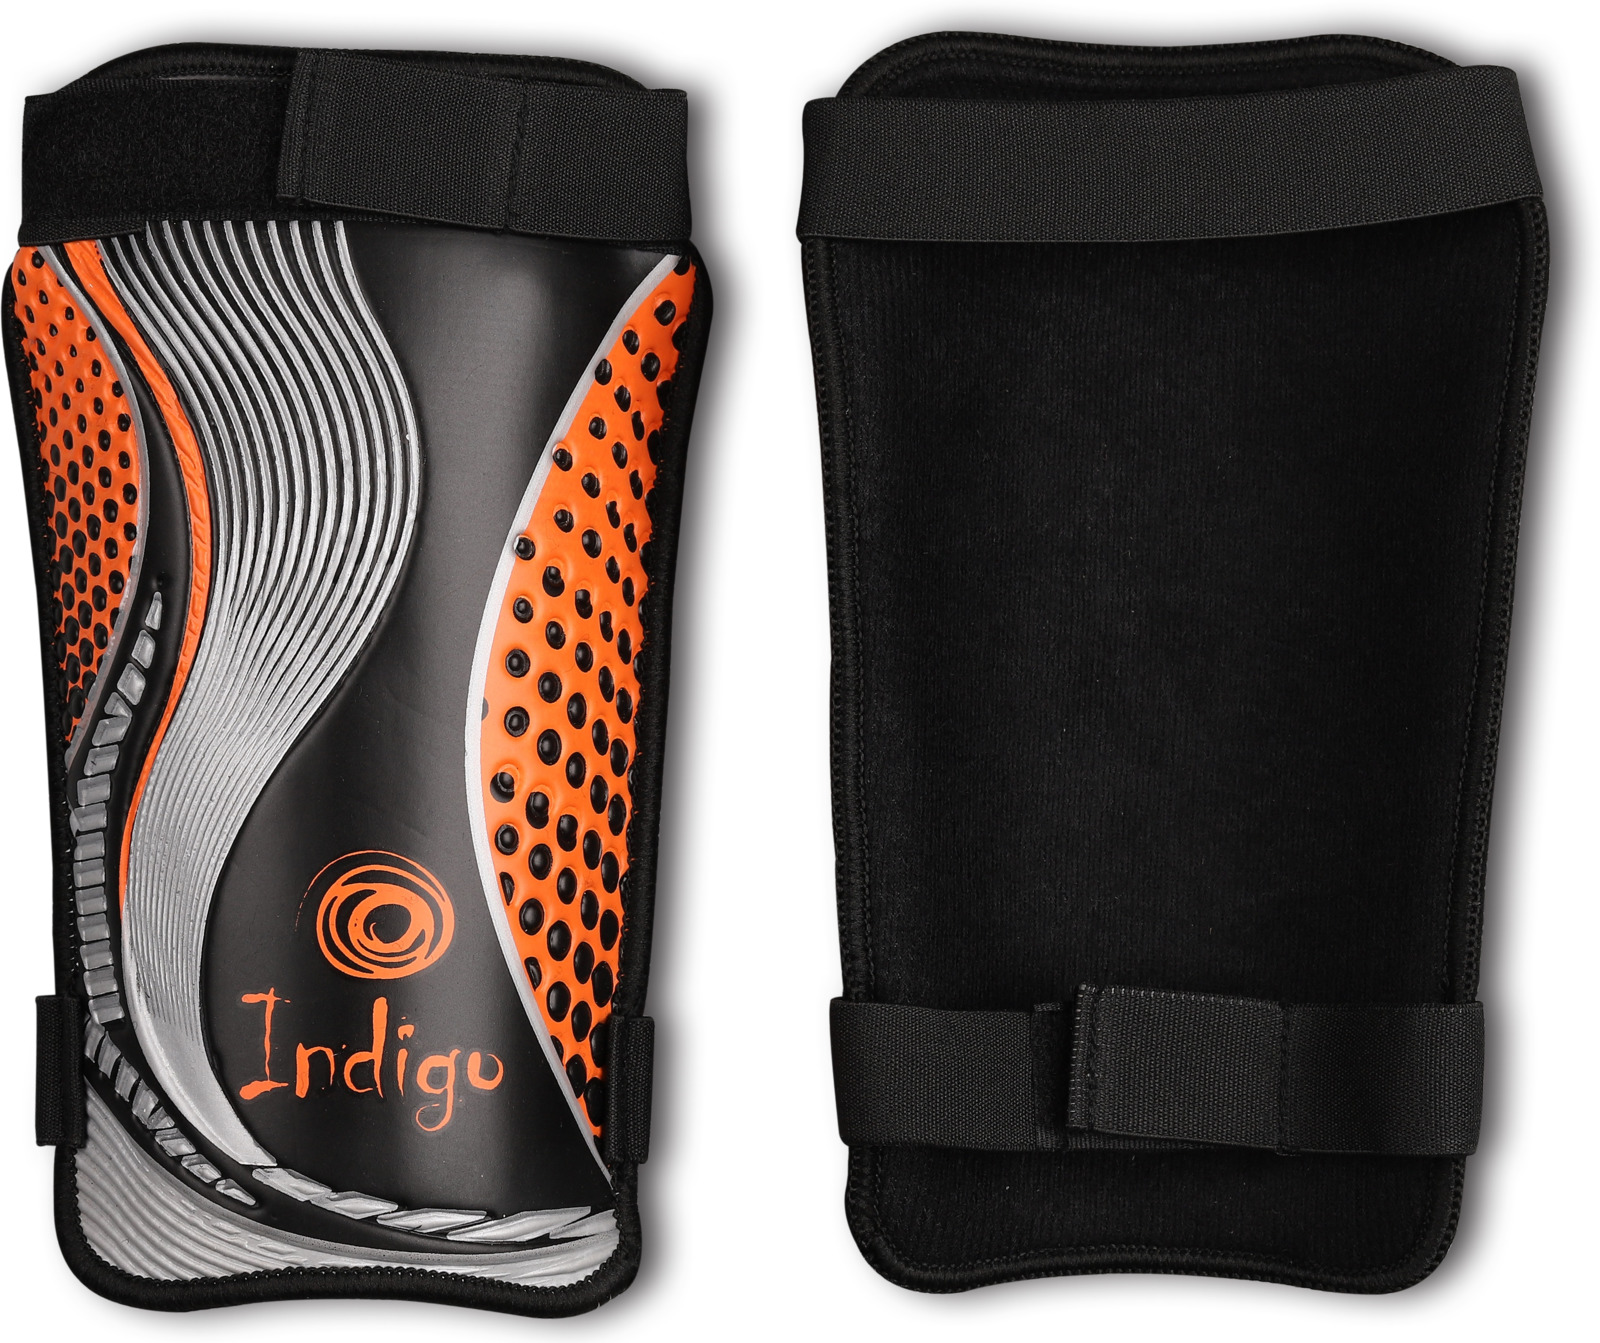 Щитки футбольные Indigo, с дополнительным покрытием, 1253, черный, оранжевый, размер XS